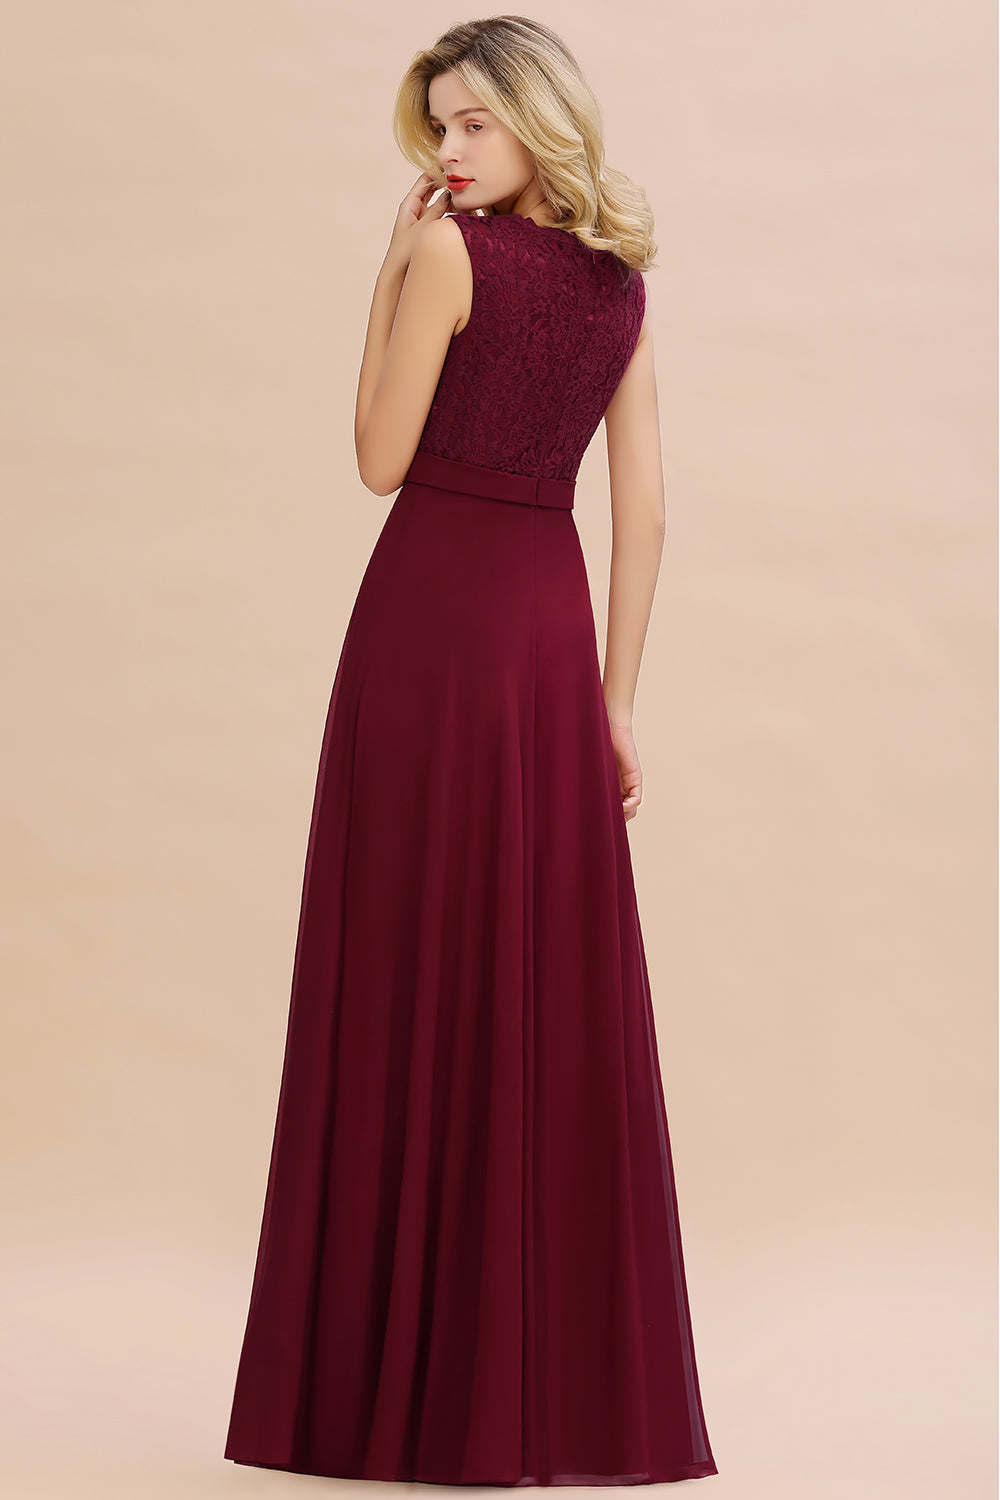 Elegant Lace Deep V-Neck Burgundy Bridesmaid Dress Affordable-27dress